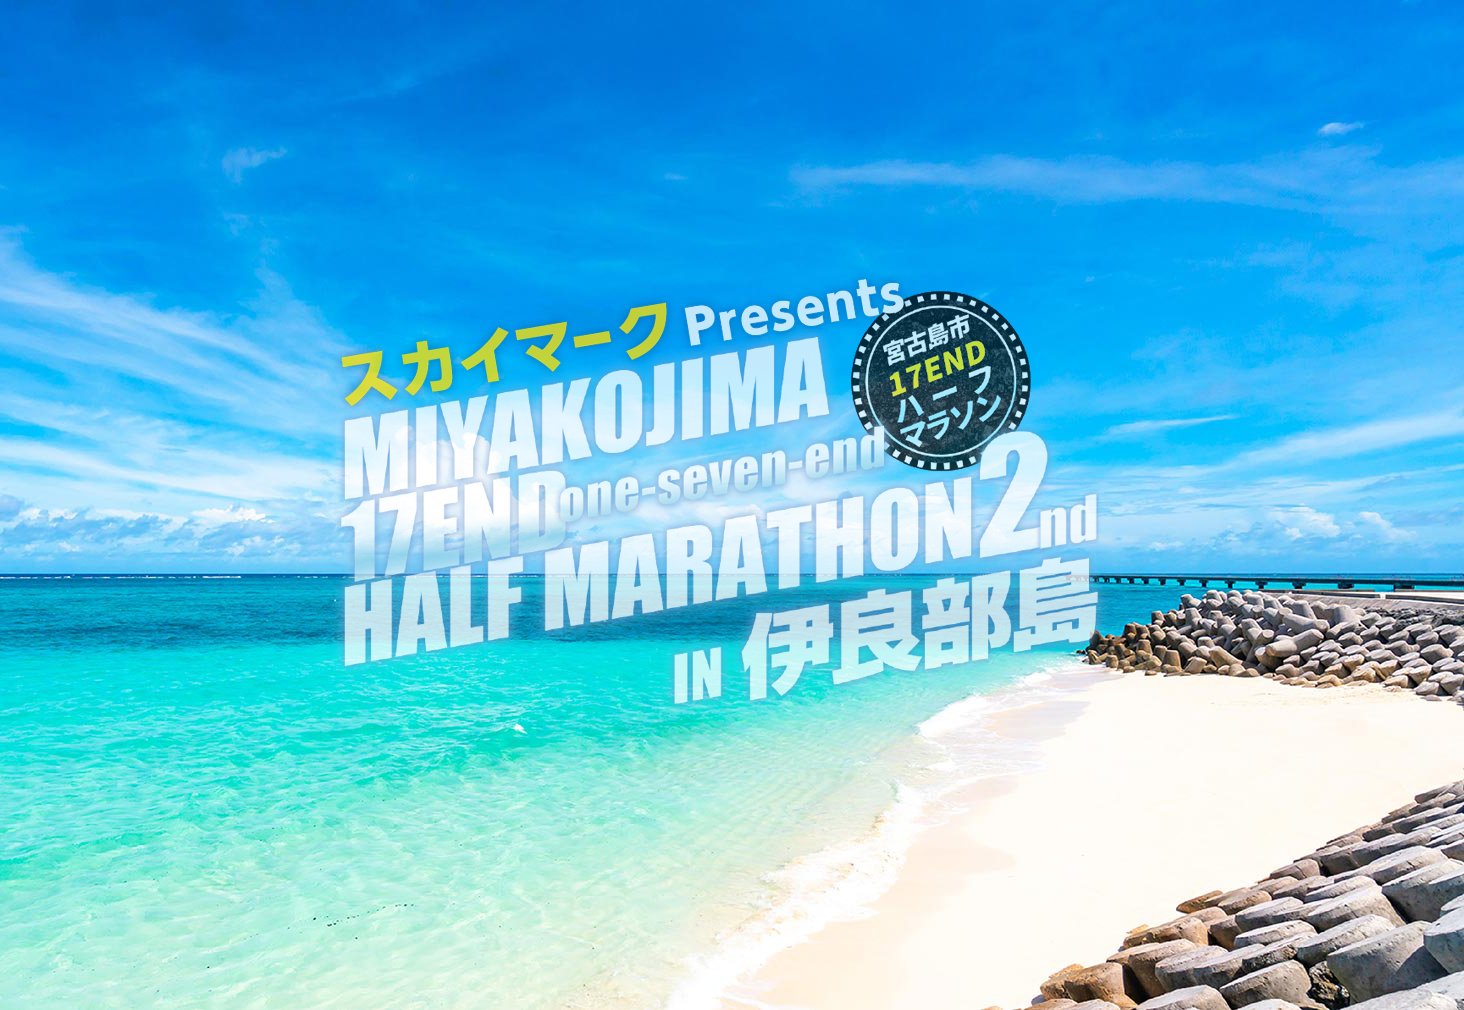 伊良部島で第二回17エンドハーフマラソンを走ってきました。